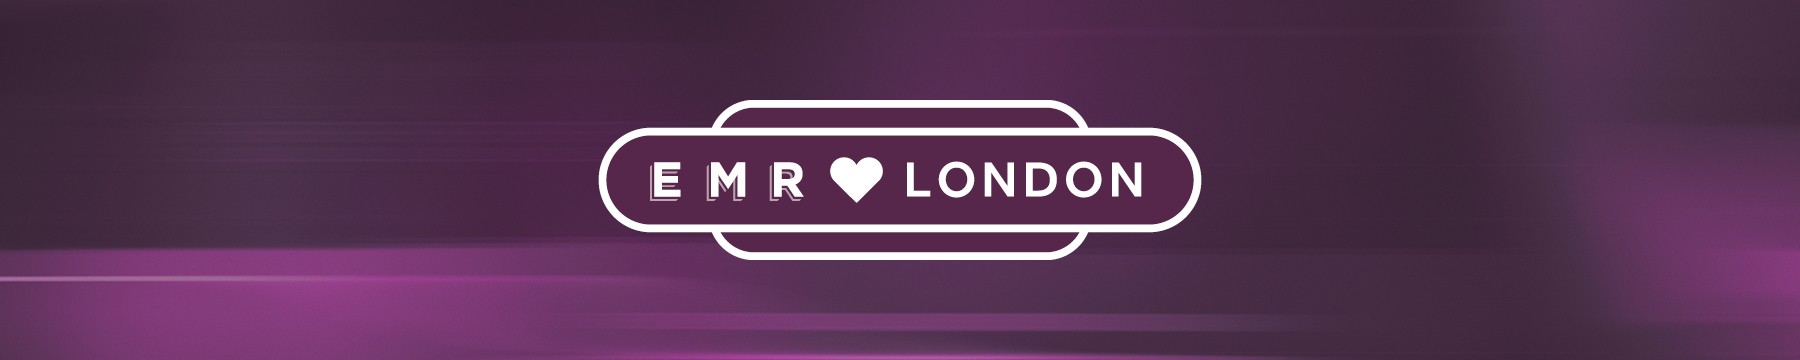 EMR loves London